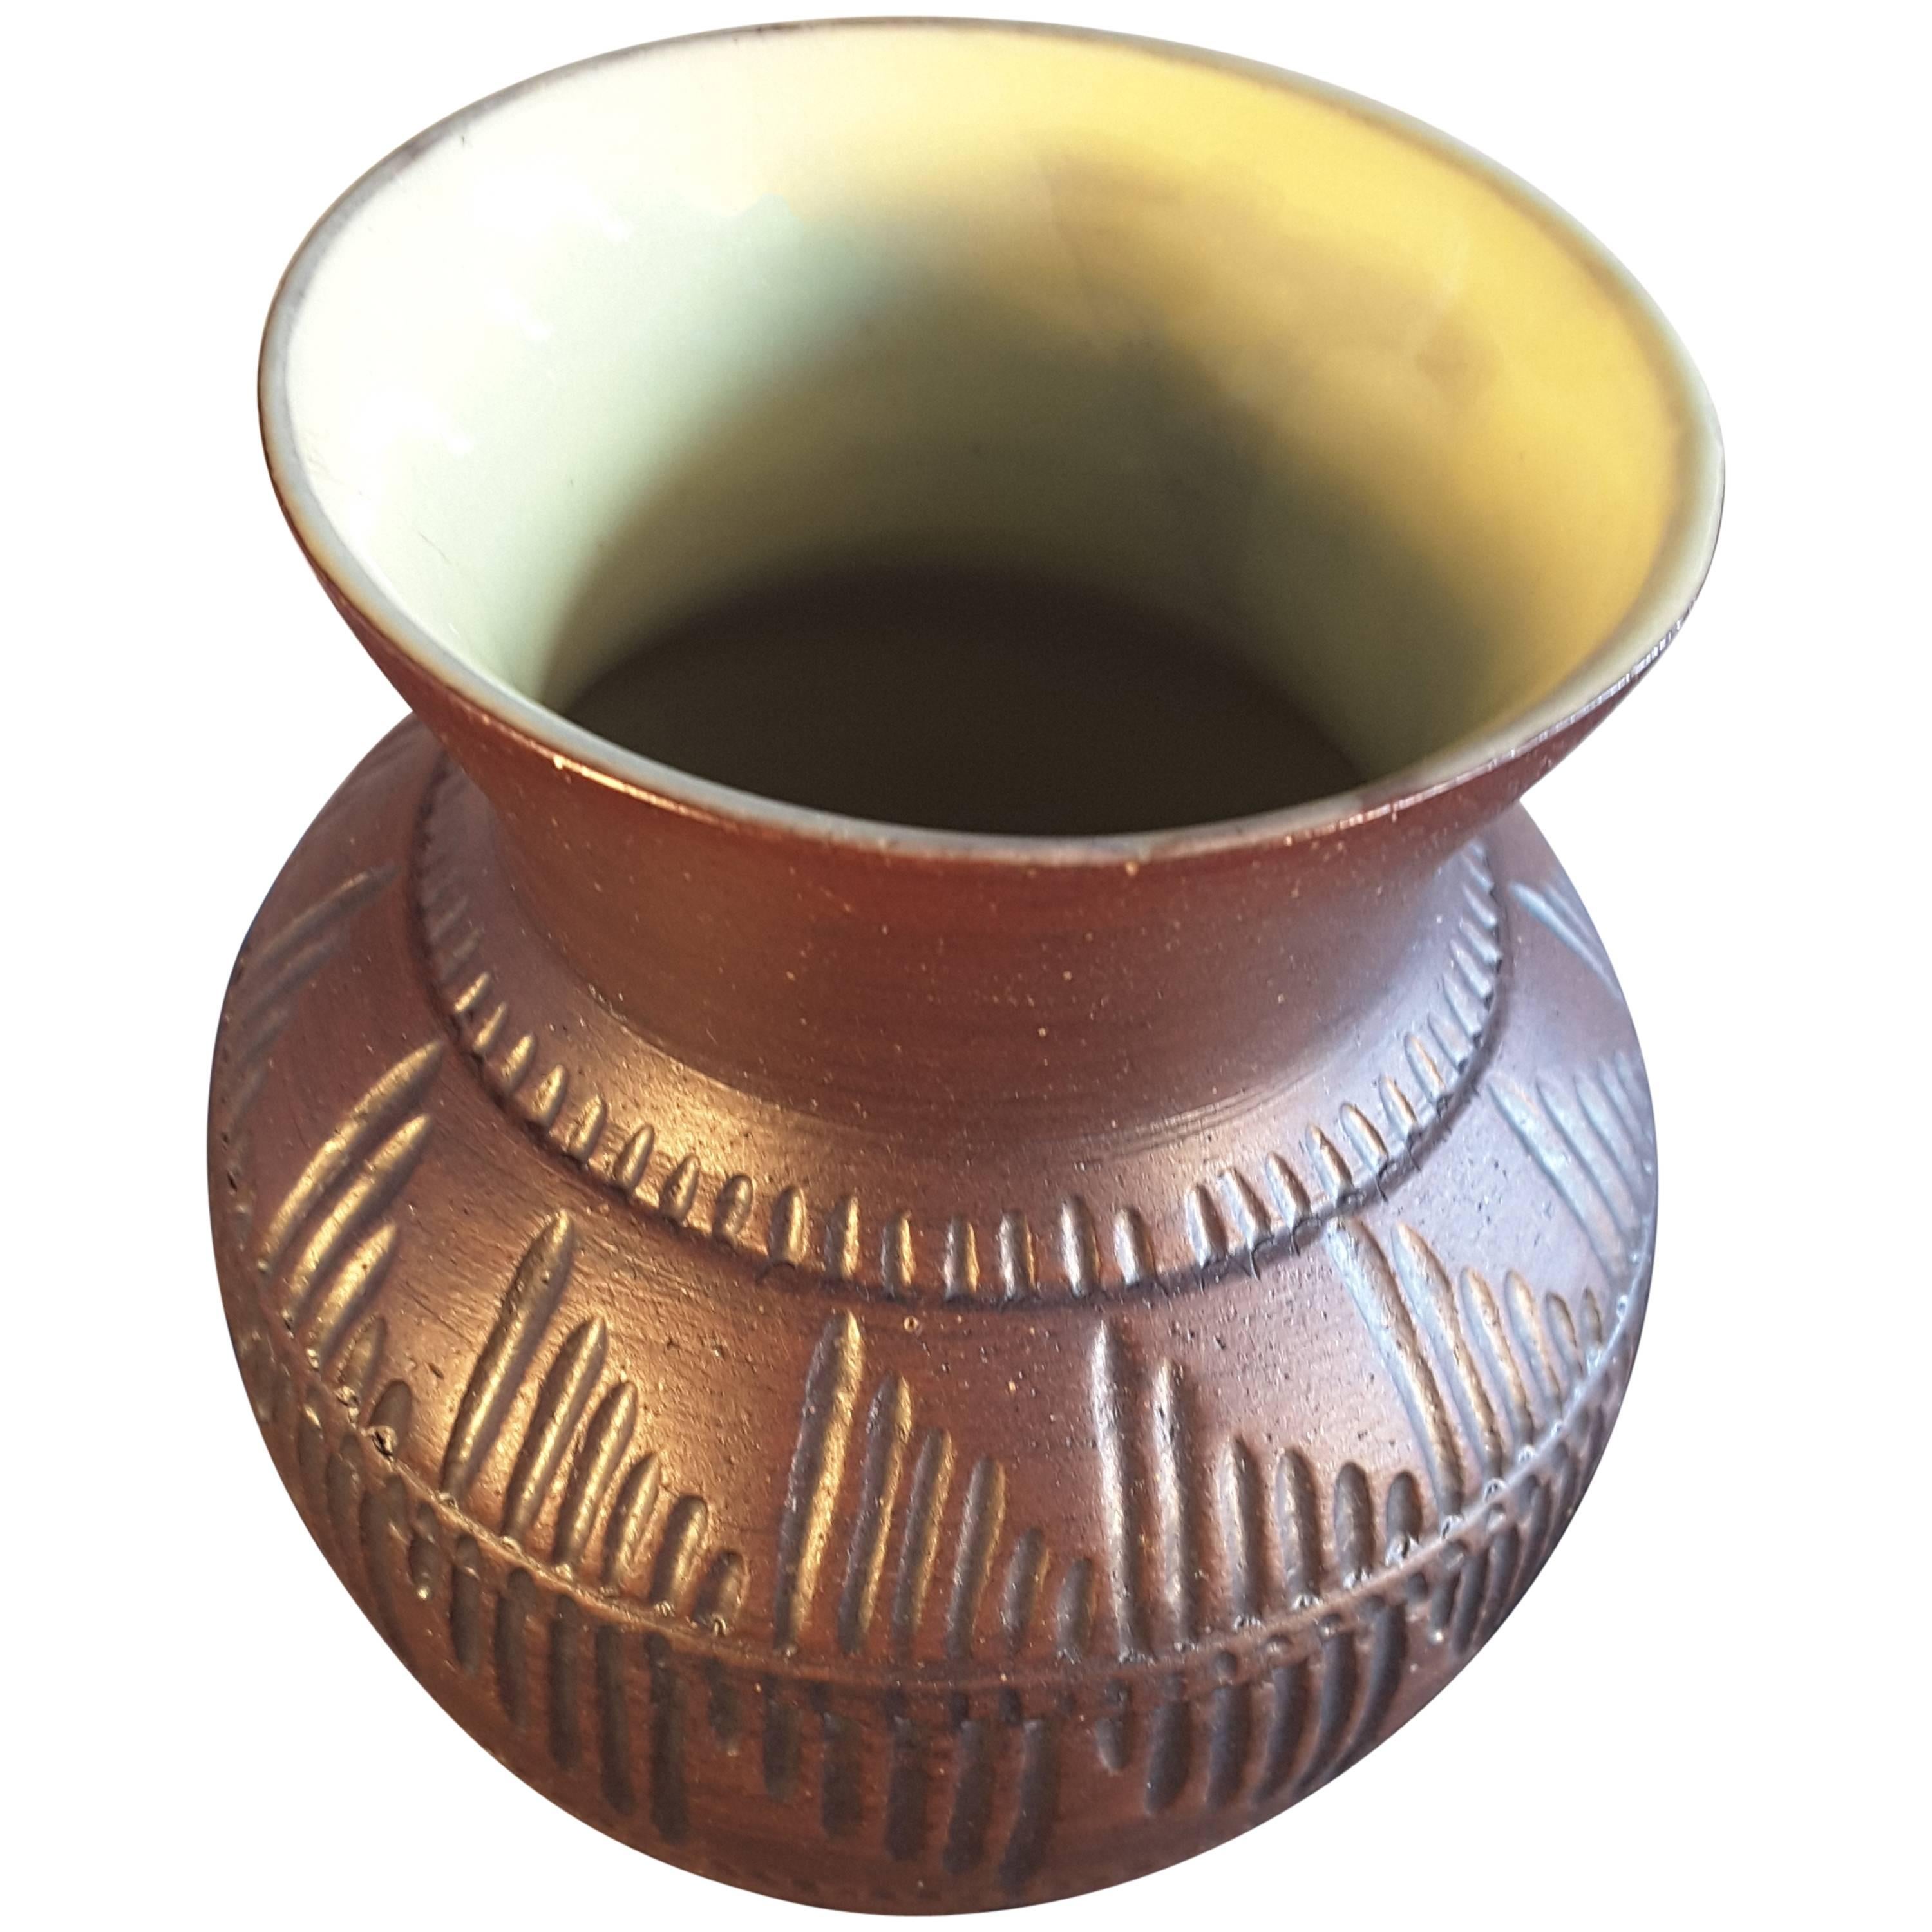 Six Nations Native American Pottery Vase mit gelber Innenseite/brauner Außenseite